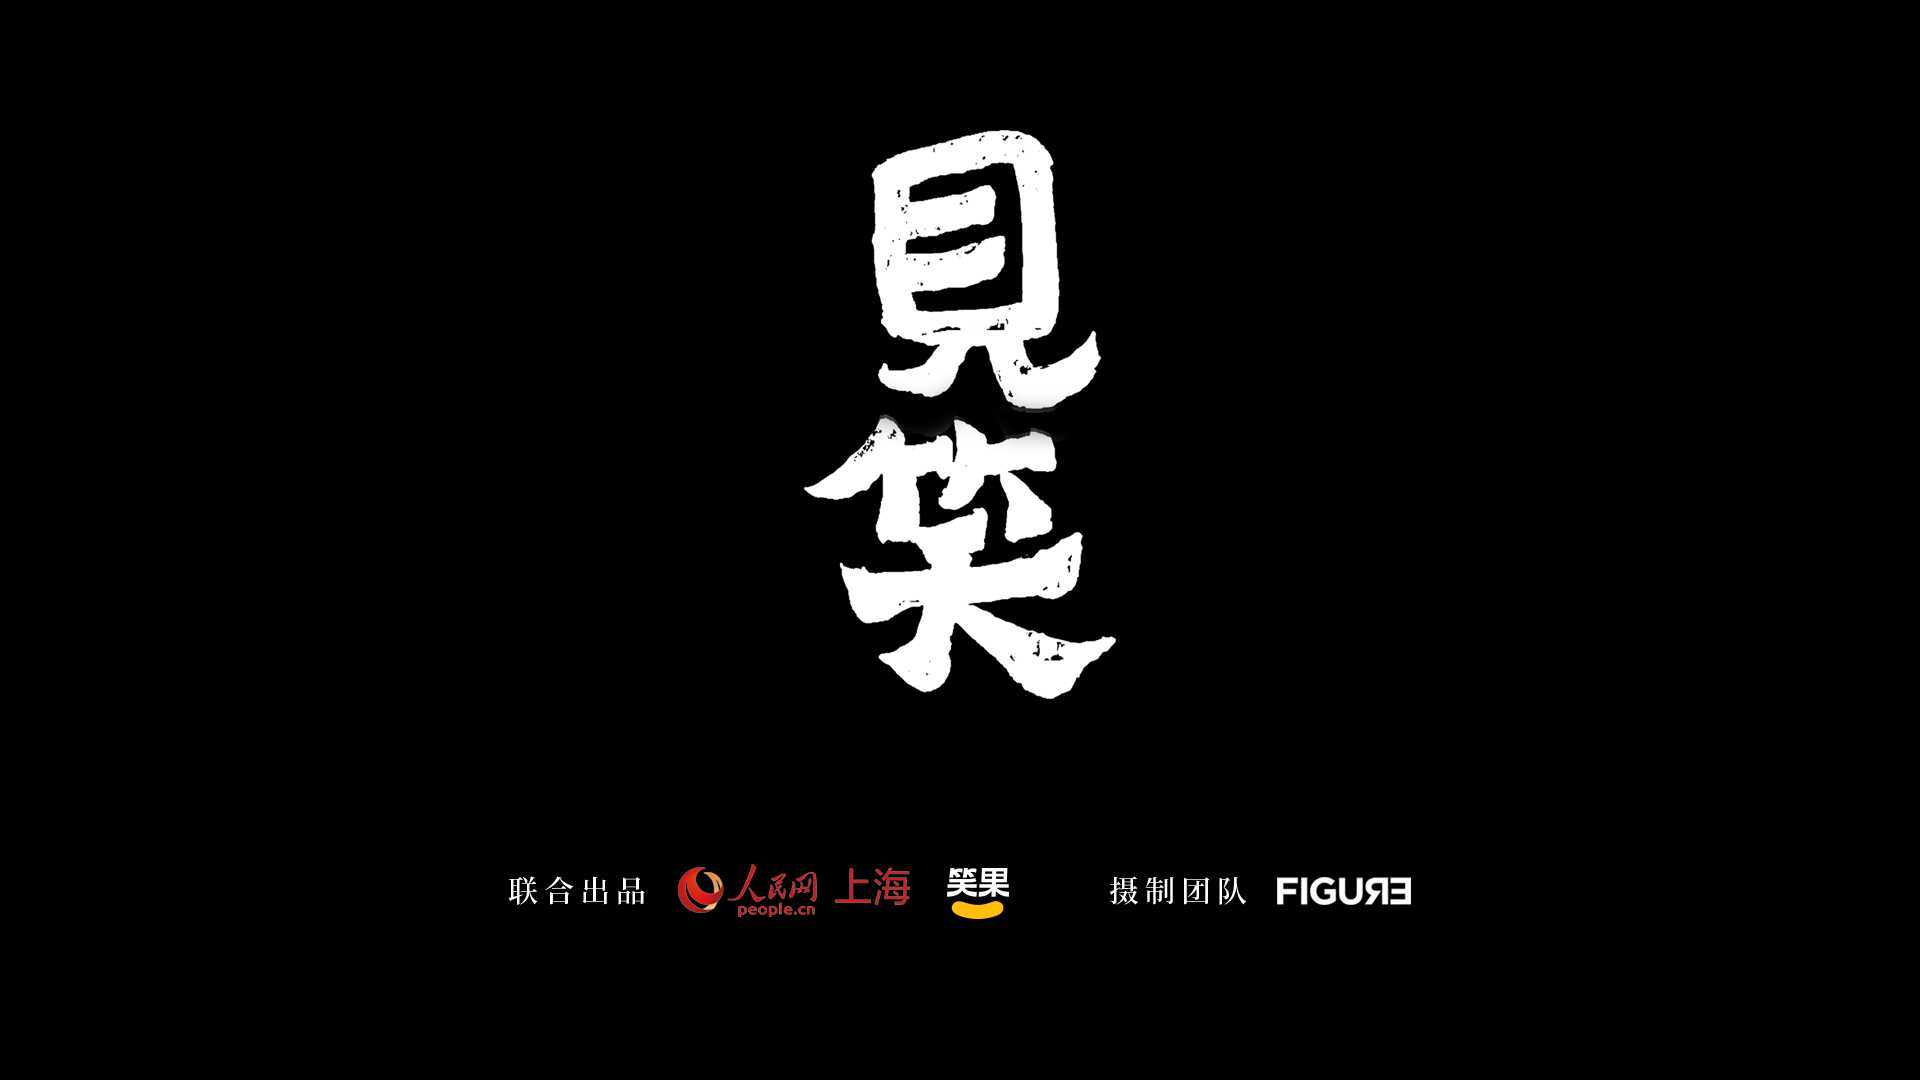 【笑果xFigure】中国首部脱口秀行业纪录片《见笑》预告片